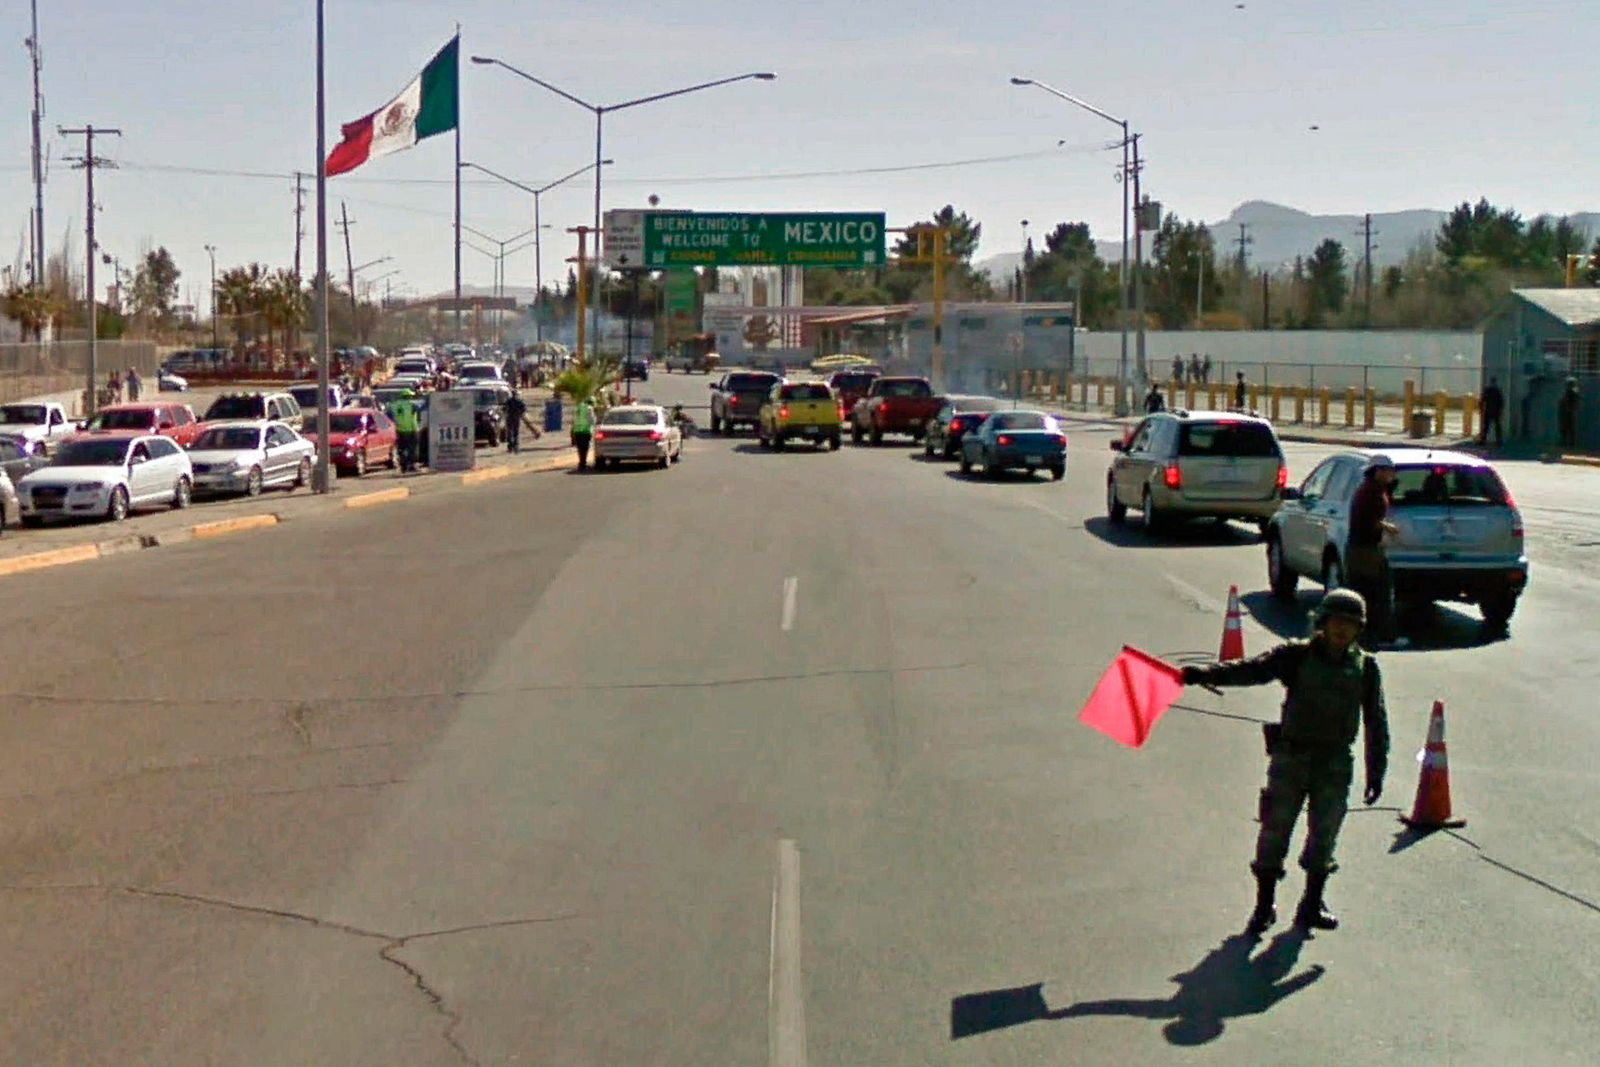 © Alejandro "Luperca" Morales - Avenida de las Américas. Welcome to Mexico. Welcome to Ciudad Juárez.